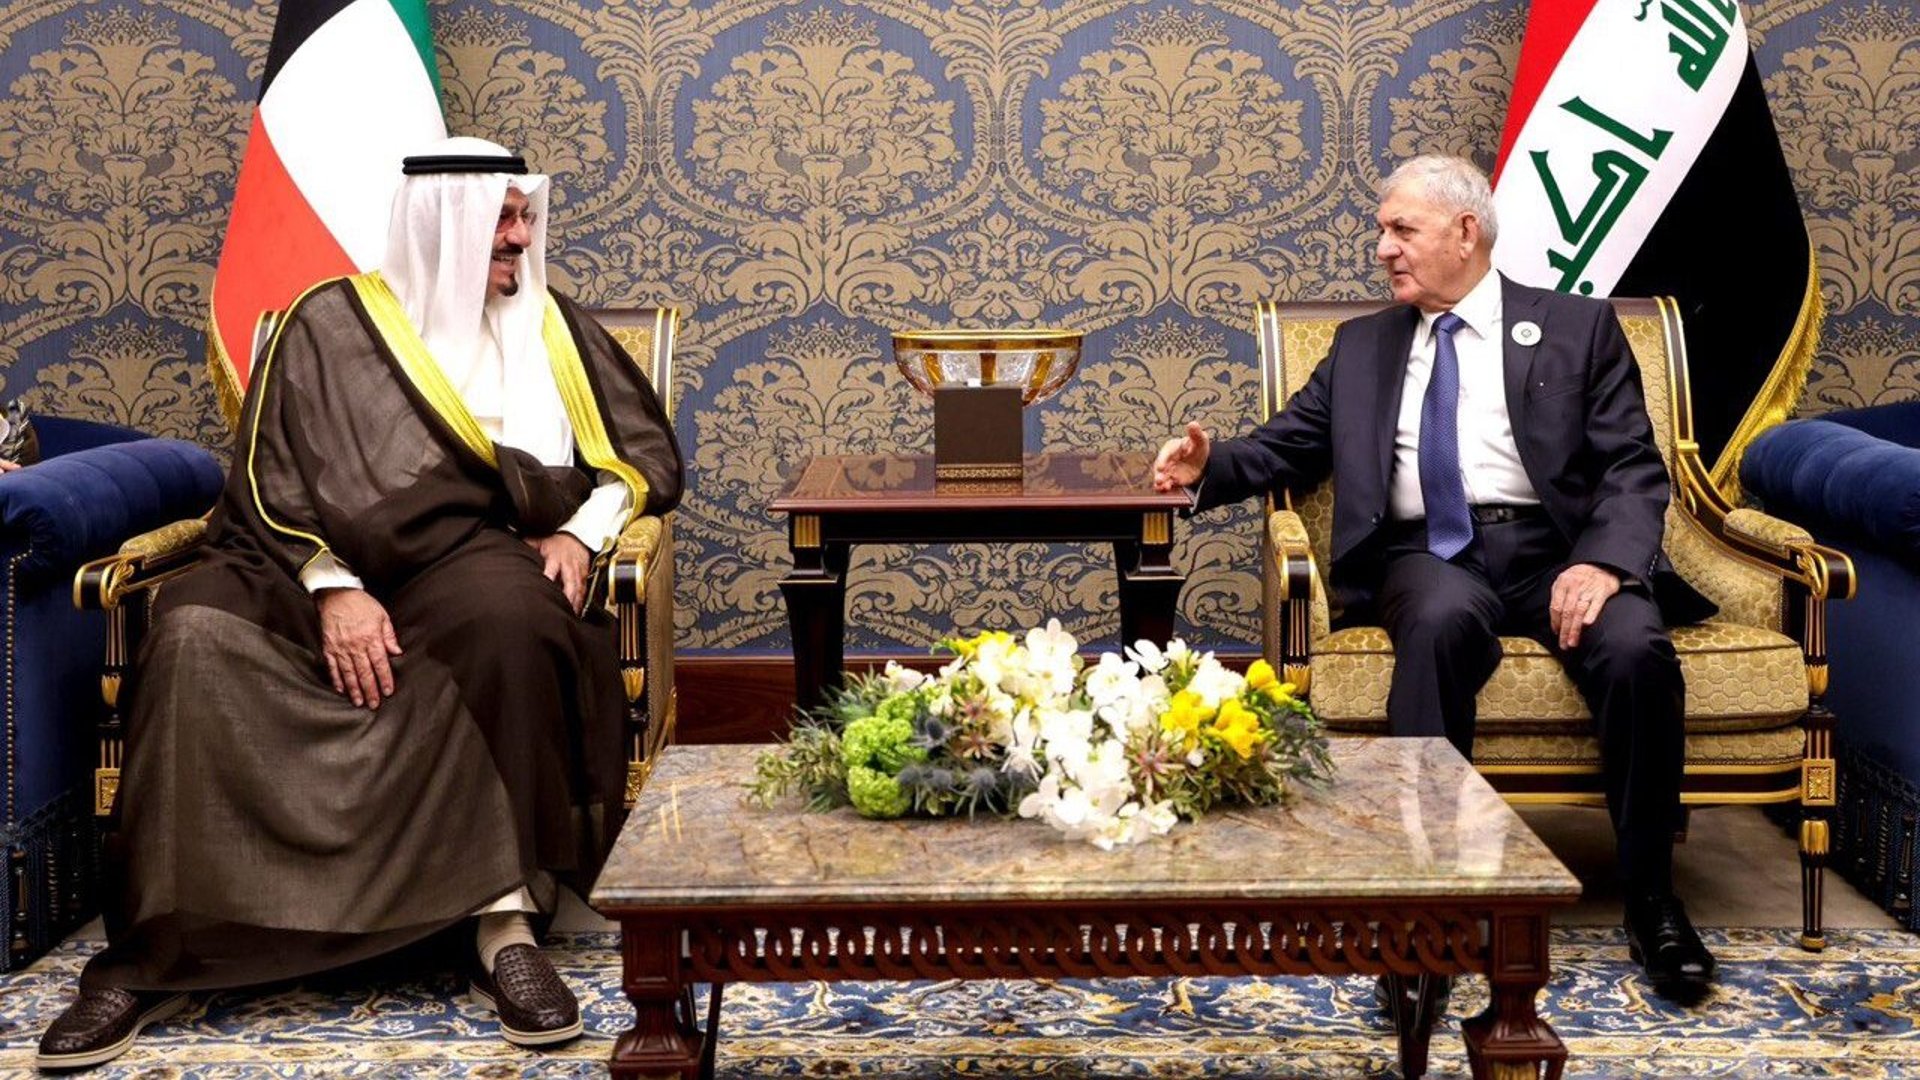 صور من اجتماع رئيس الجمهورية مع أمير الكويت في المنامة